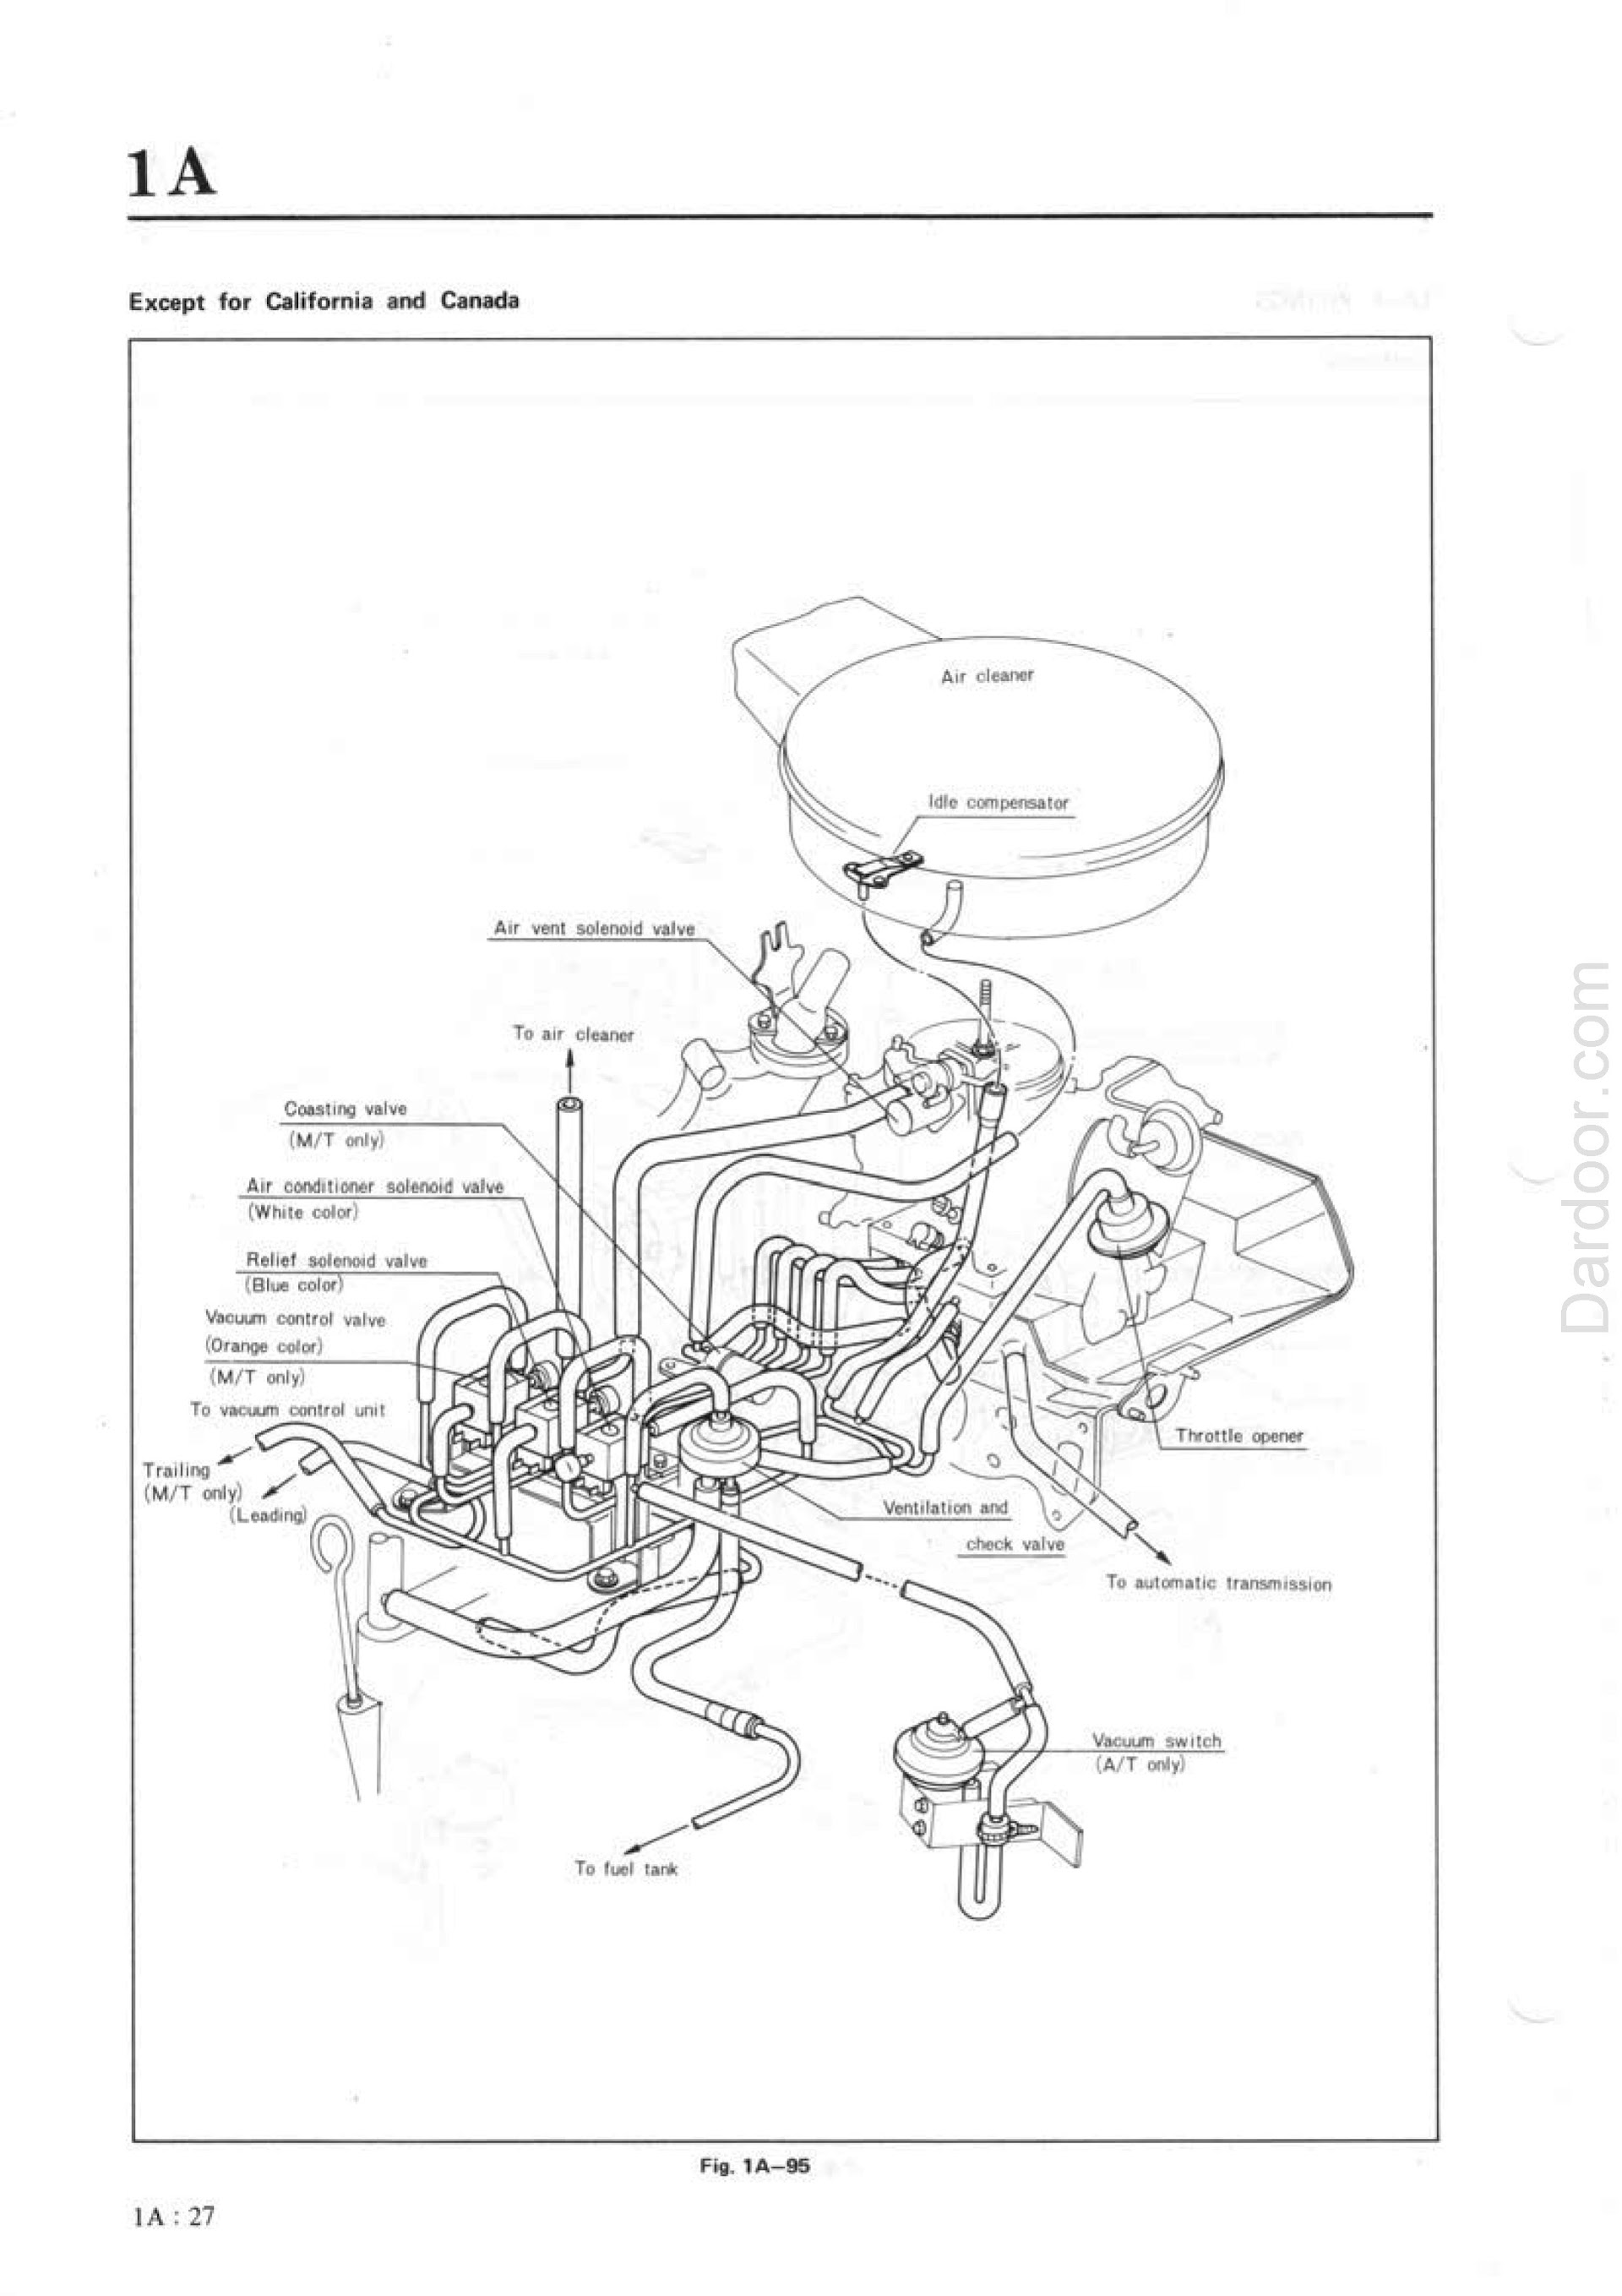 1980 Mazda RX7 repair manual pdf